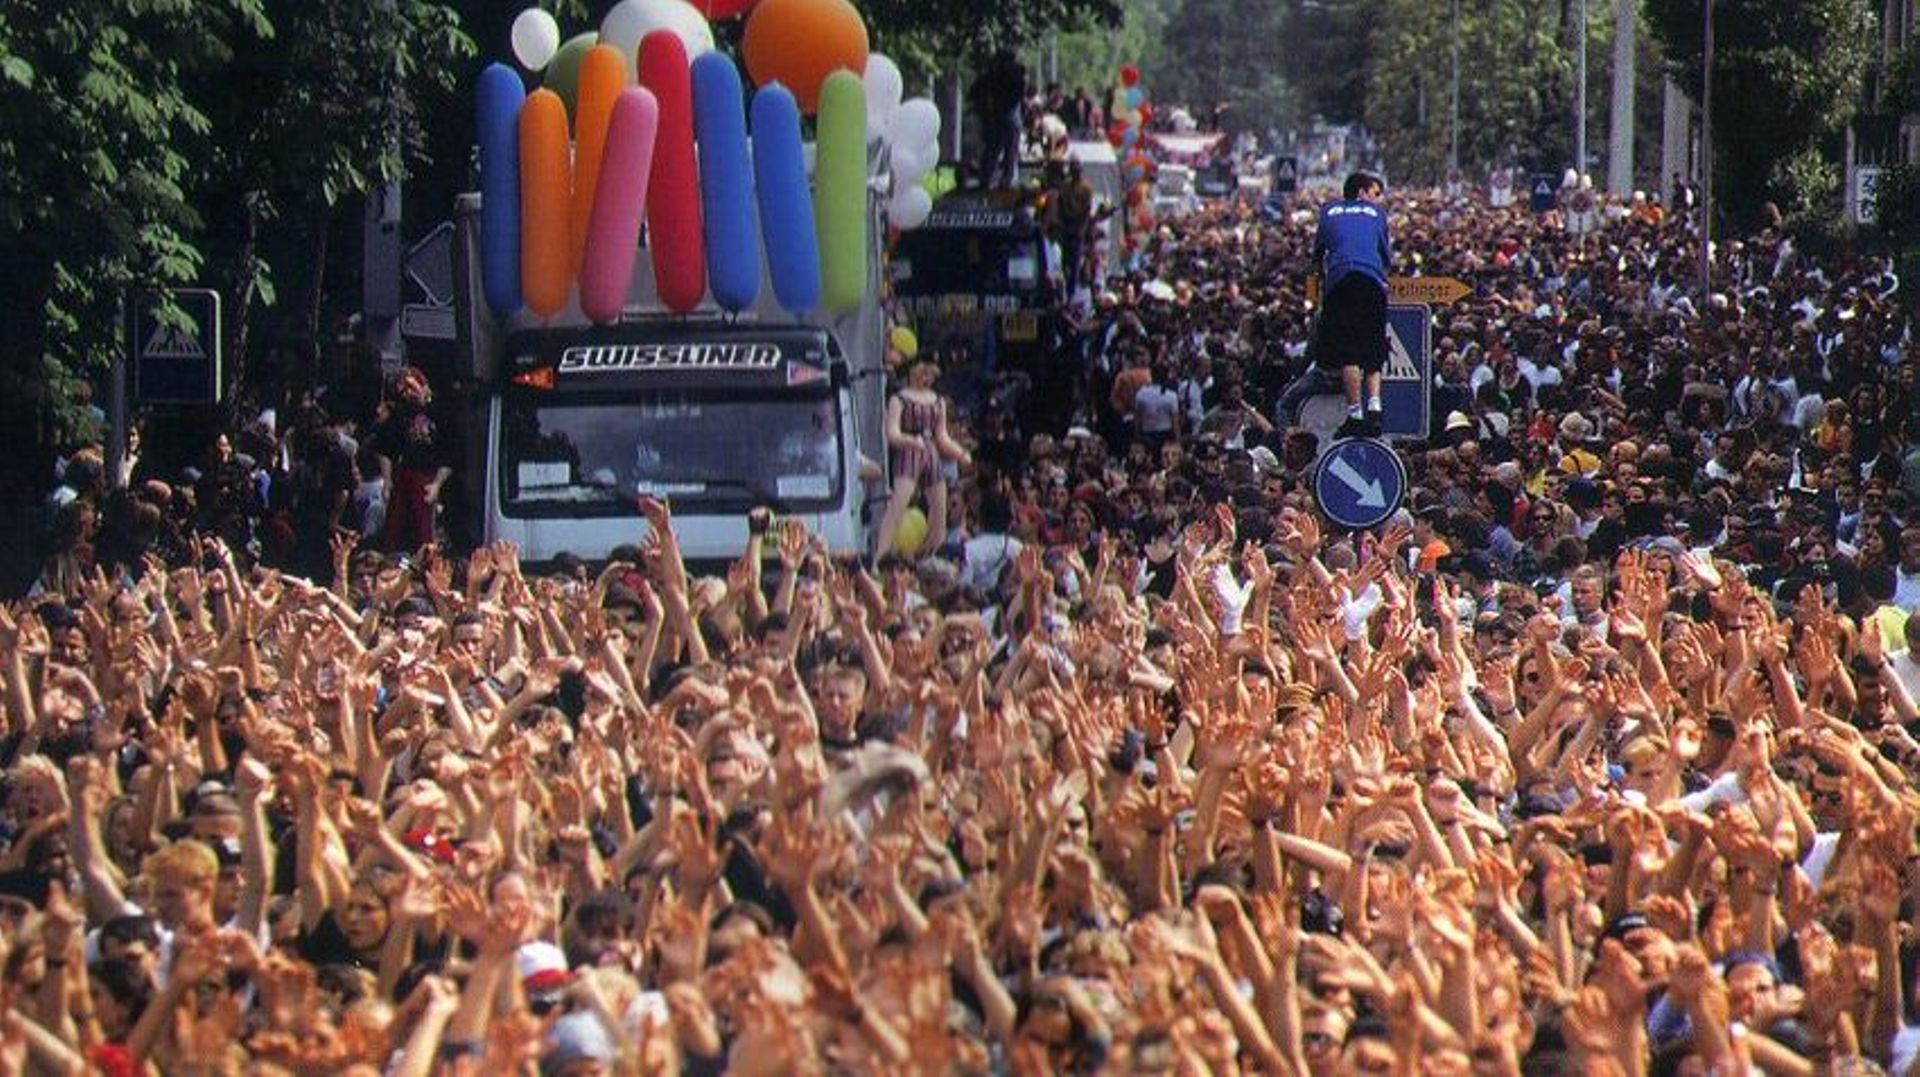 La vision musicale et ludique de Tetsuya Mizuguchi a débuté au beau milieu des 30 000 ravers de la Street Parade de Zurich, un beau jour d'été 1994. Rez, Child of Eden et Tetris Effect sont depuis lors devenus des titres cultes.